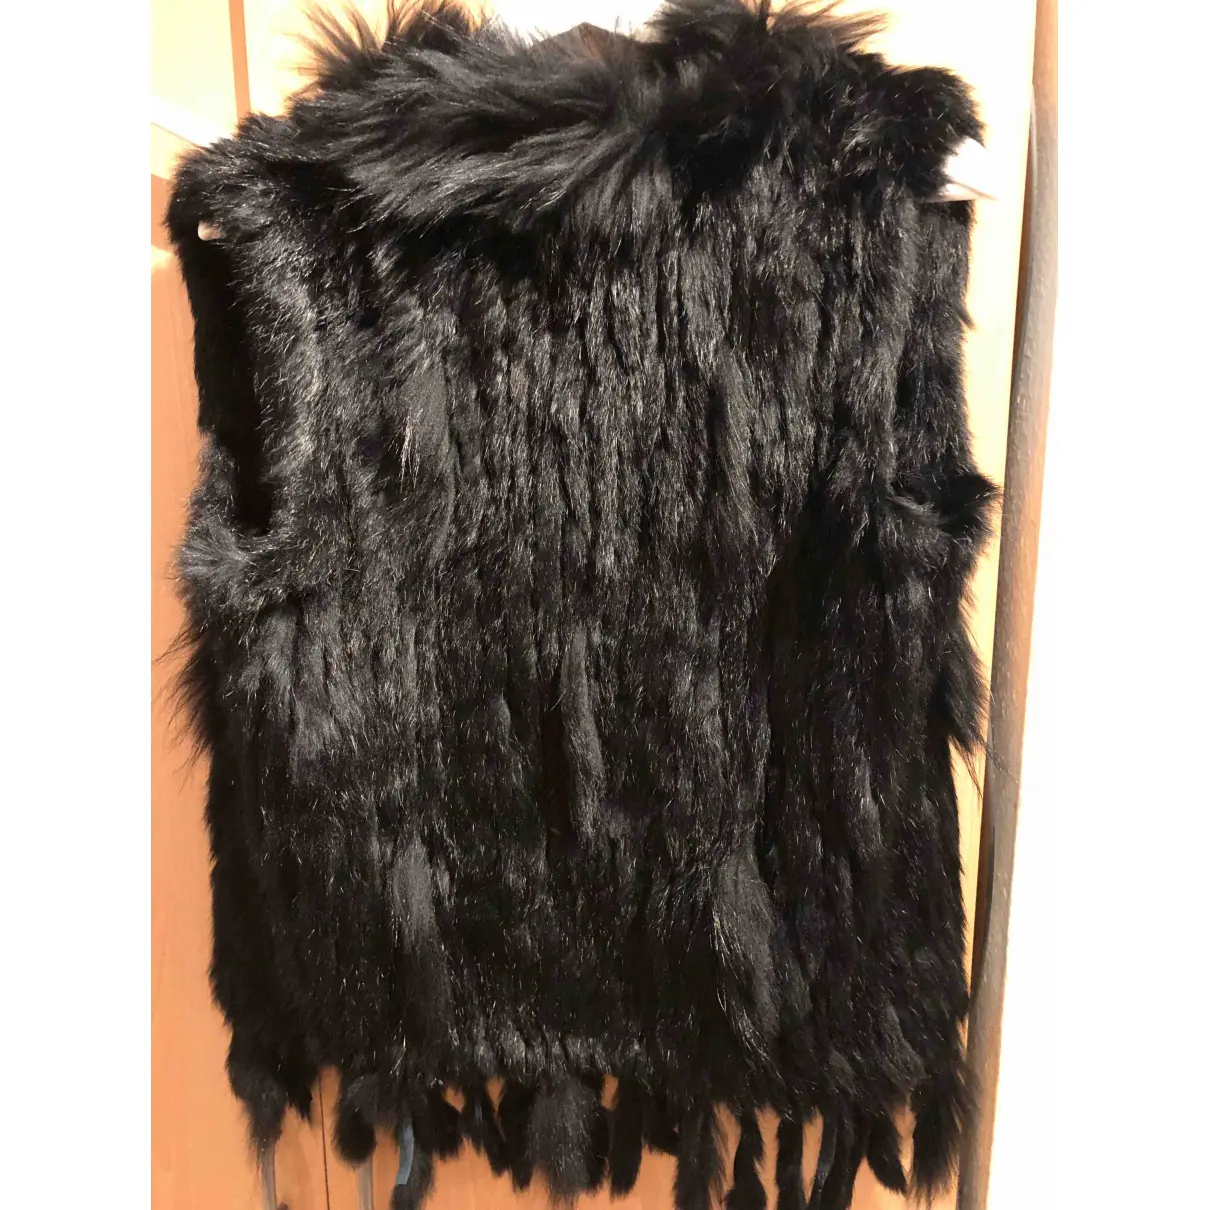 Buy Darling Faux fur cardi coat online